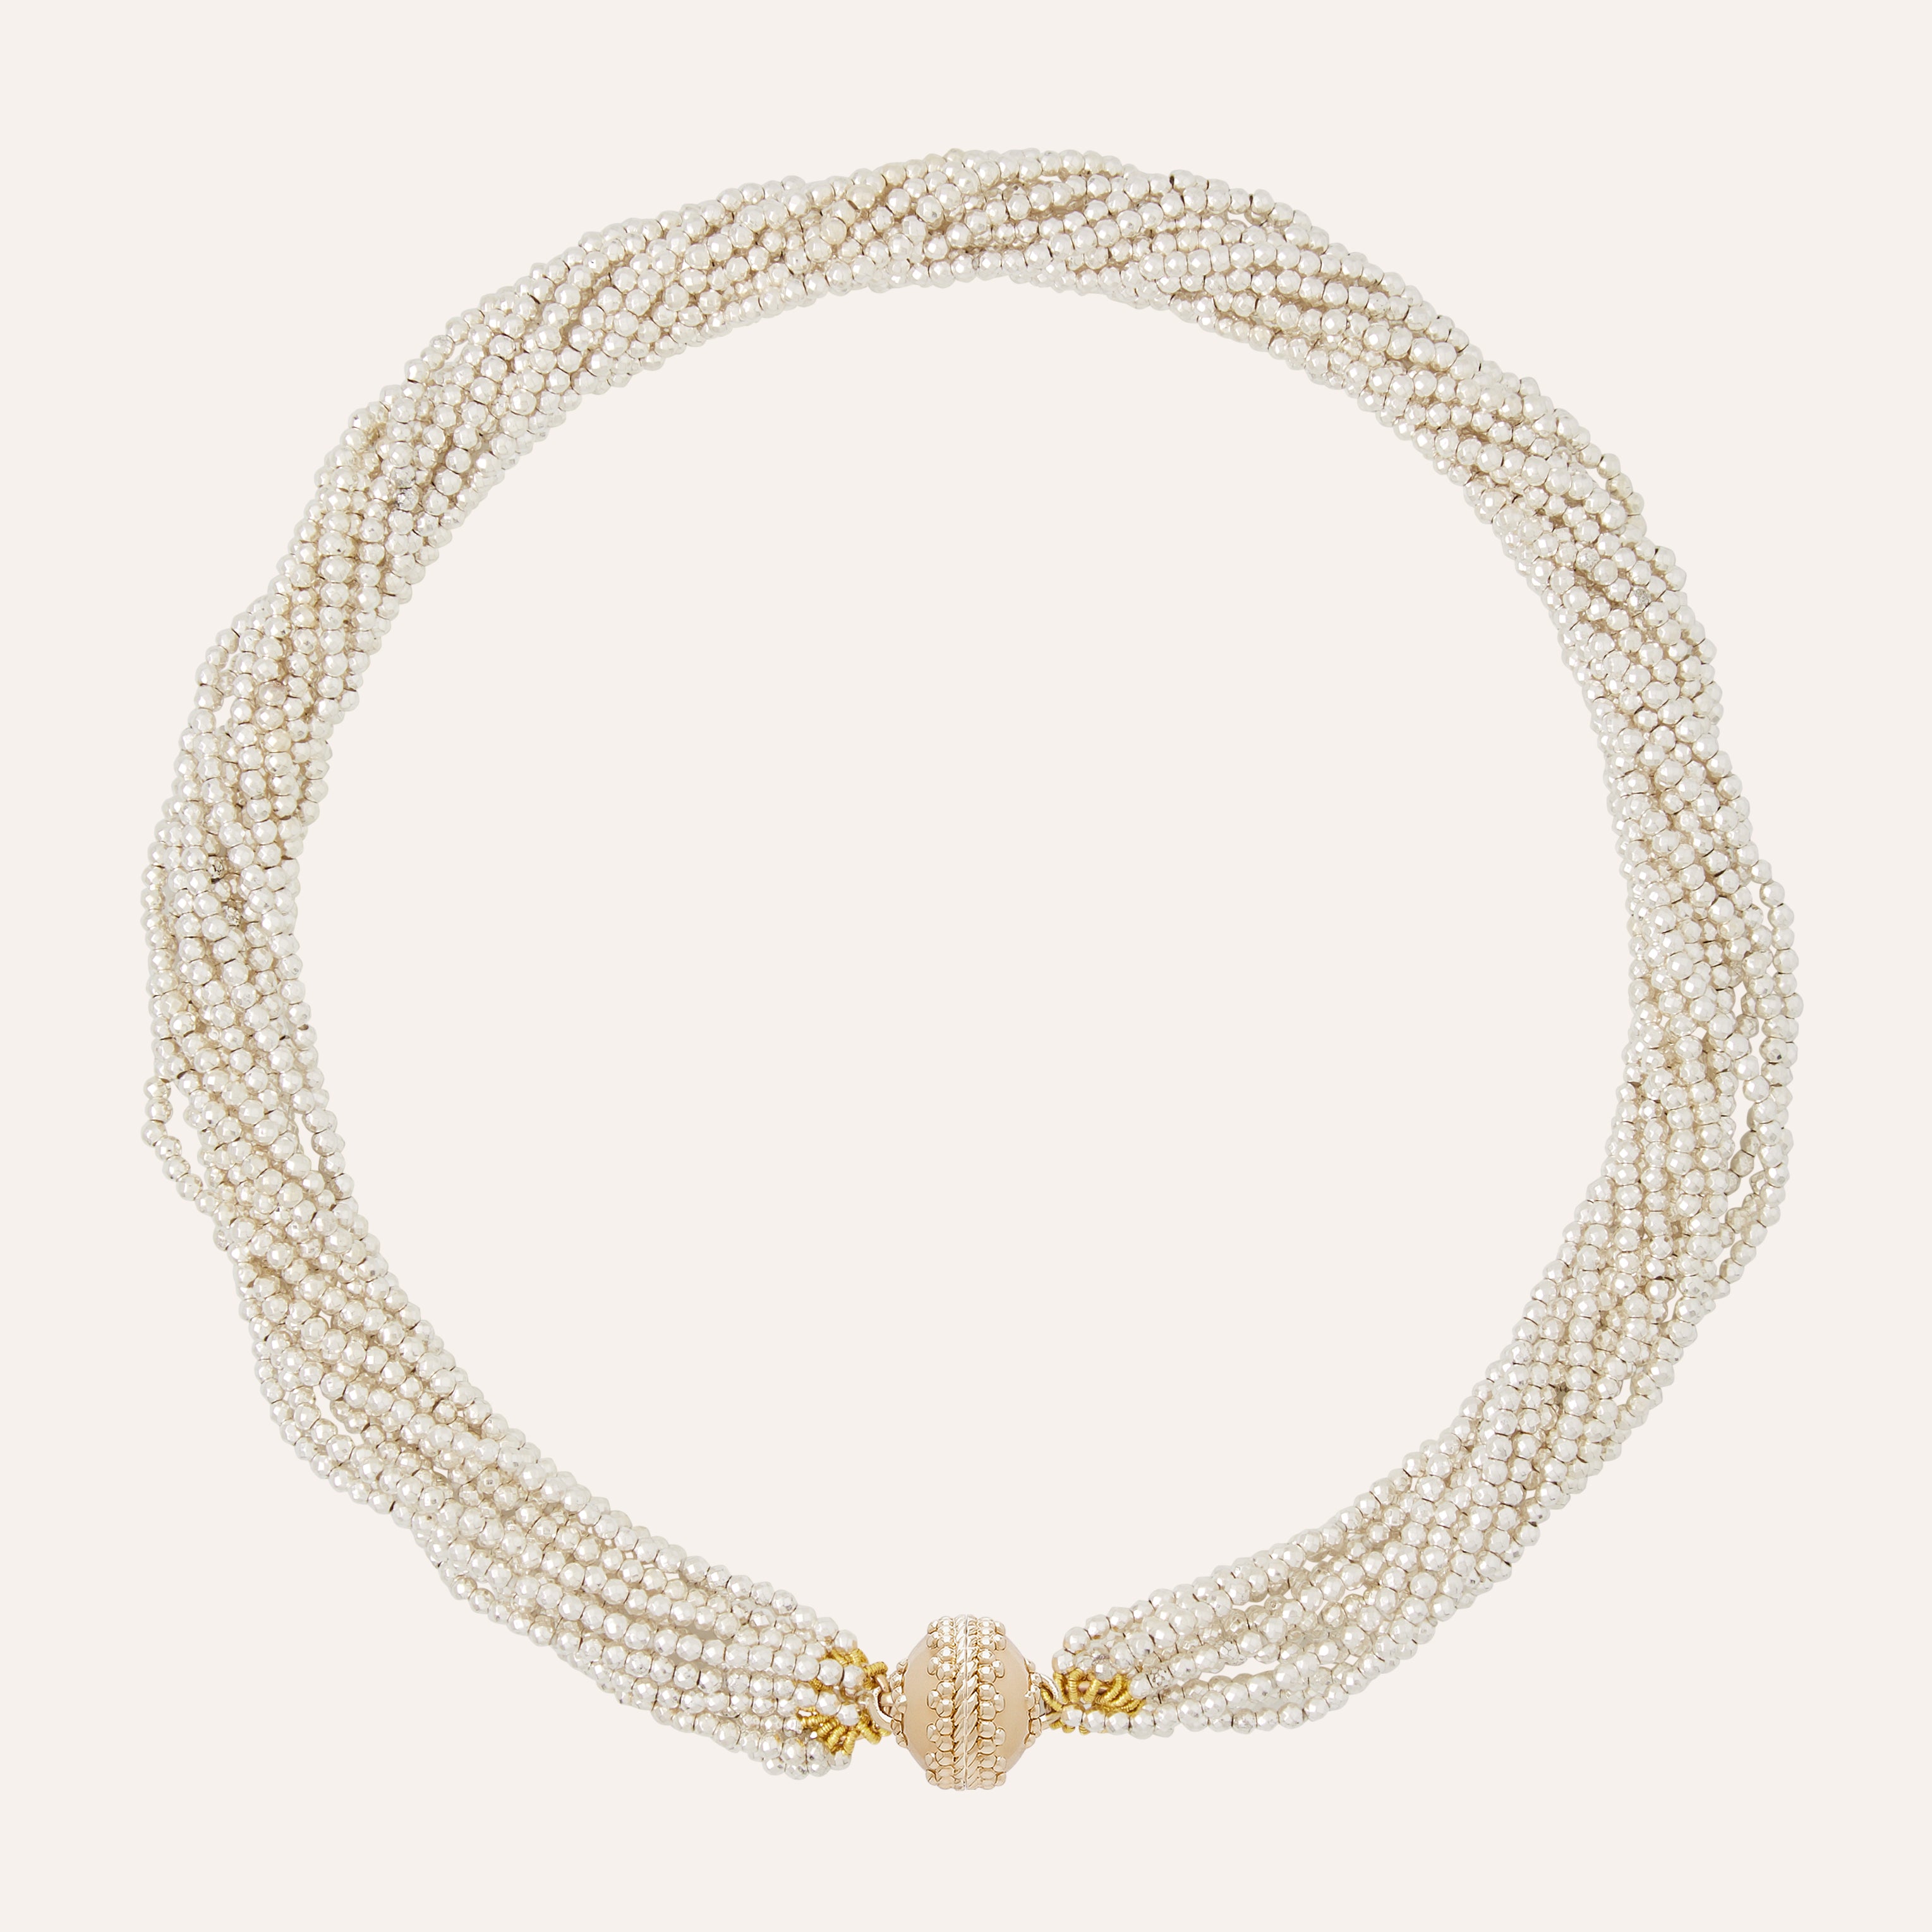 Michel Silver Plated Hematite Multi-Strand Necklace